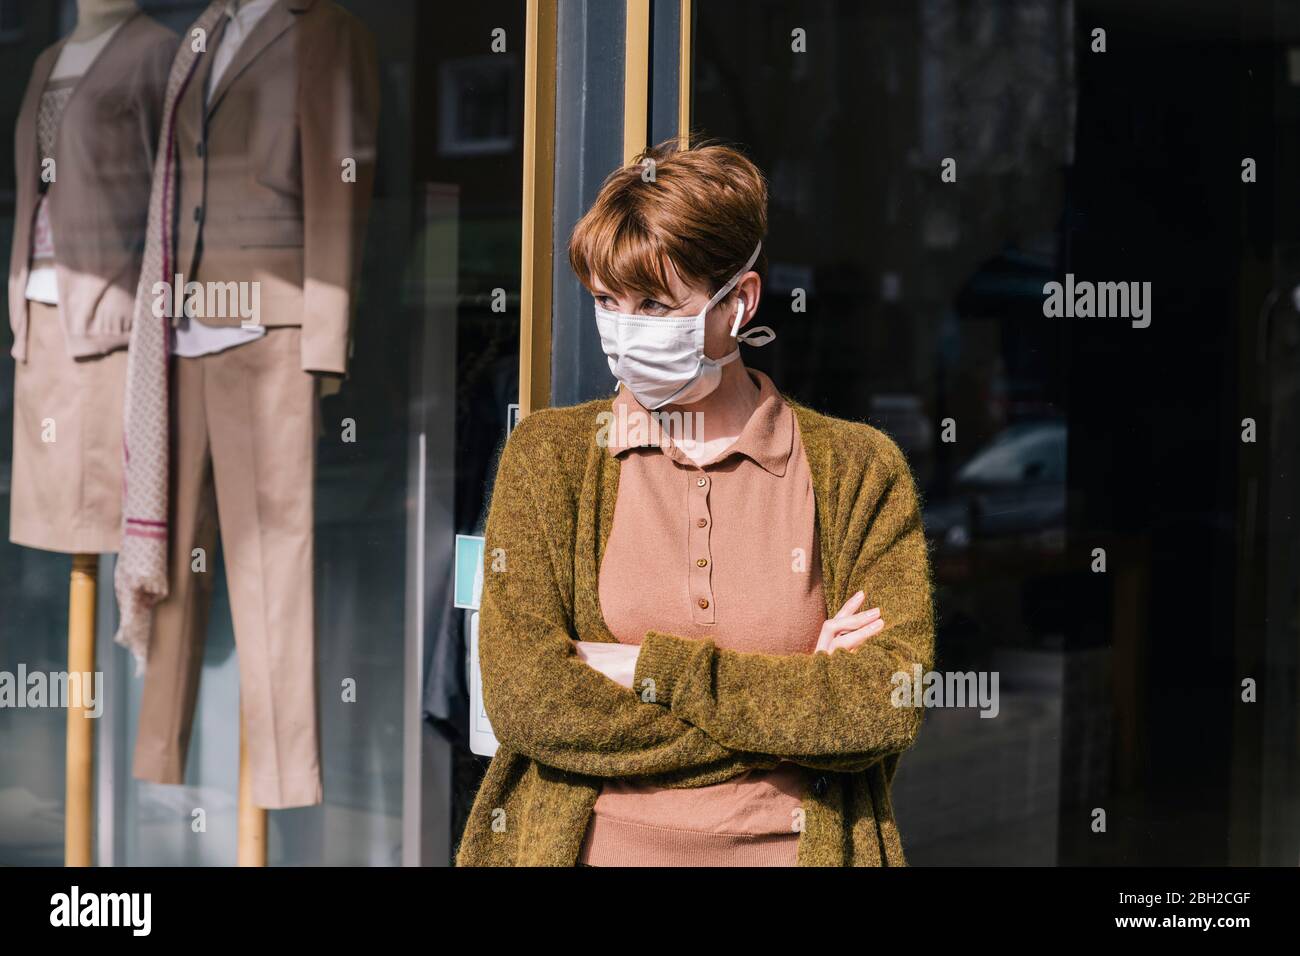 Frau in Maske vor ihrem geschlossenen Bekleidungsgeschäft stehend Stockfoto